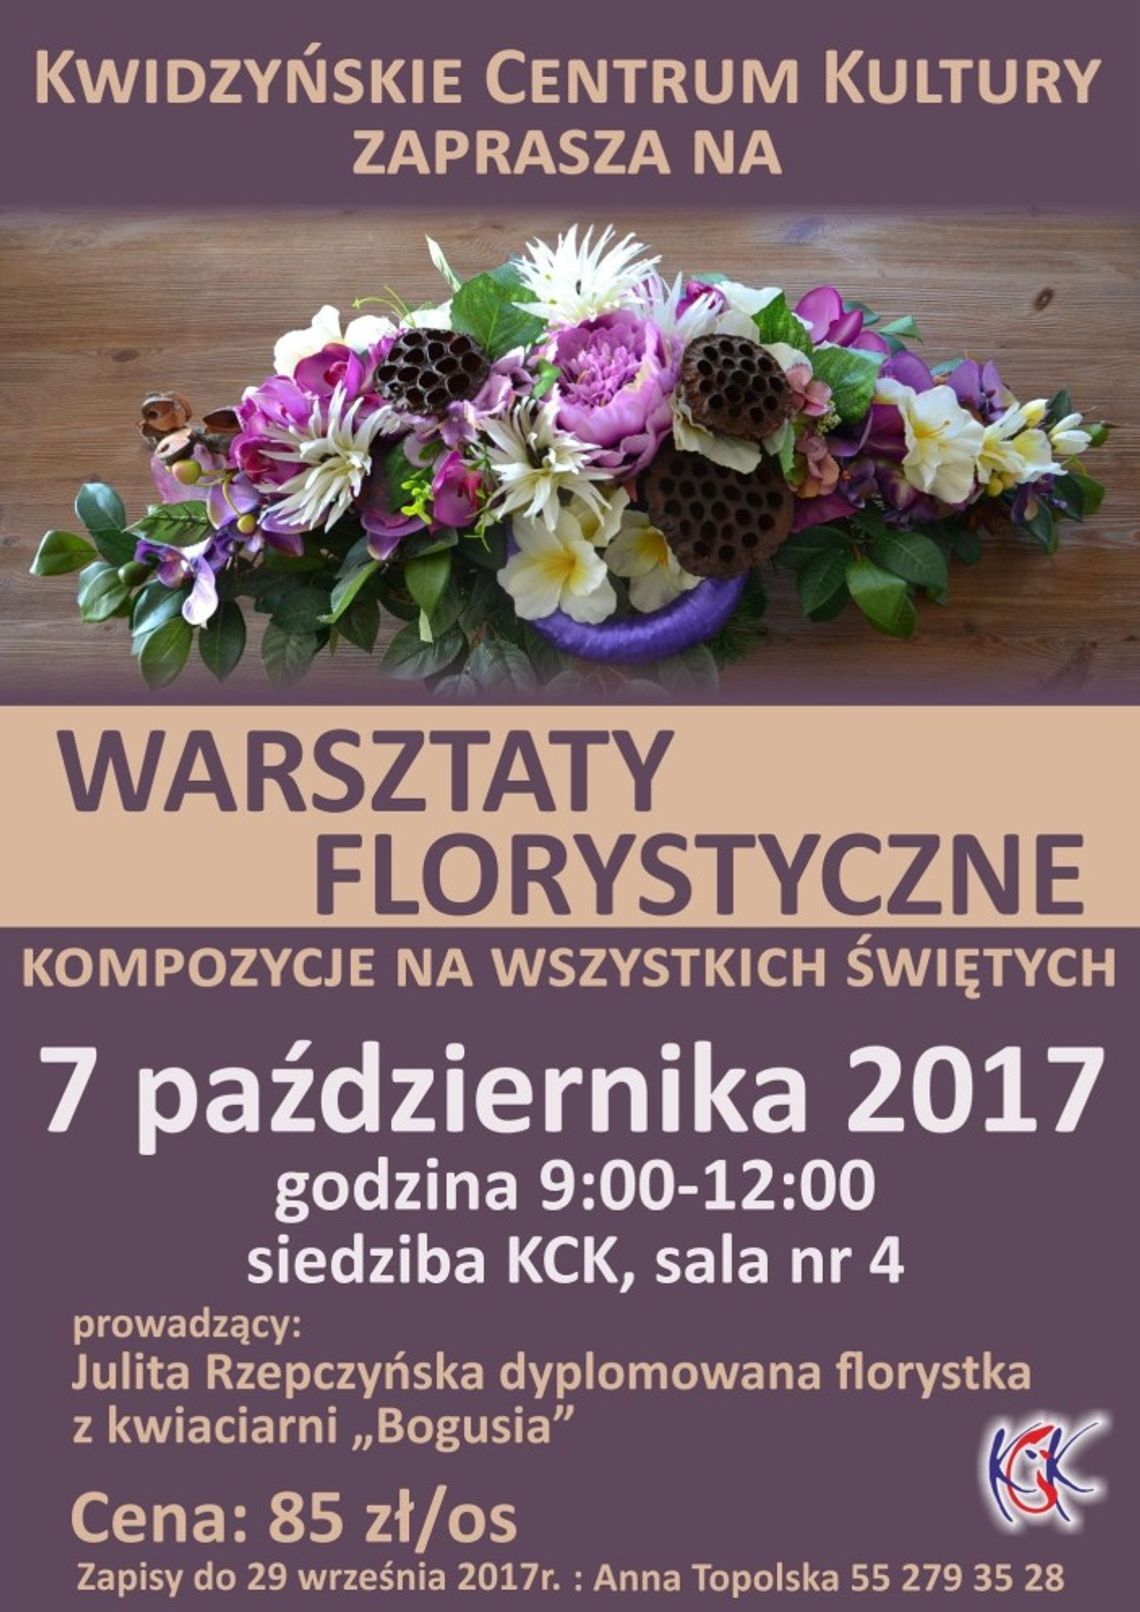  Warsztaty florystyczne KCK.